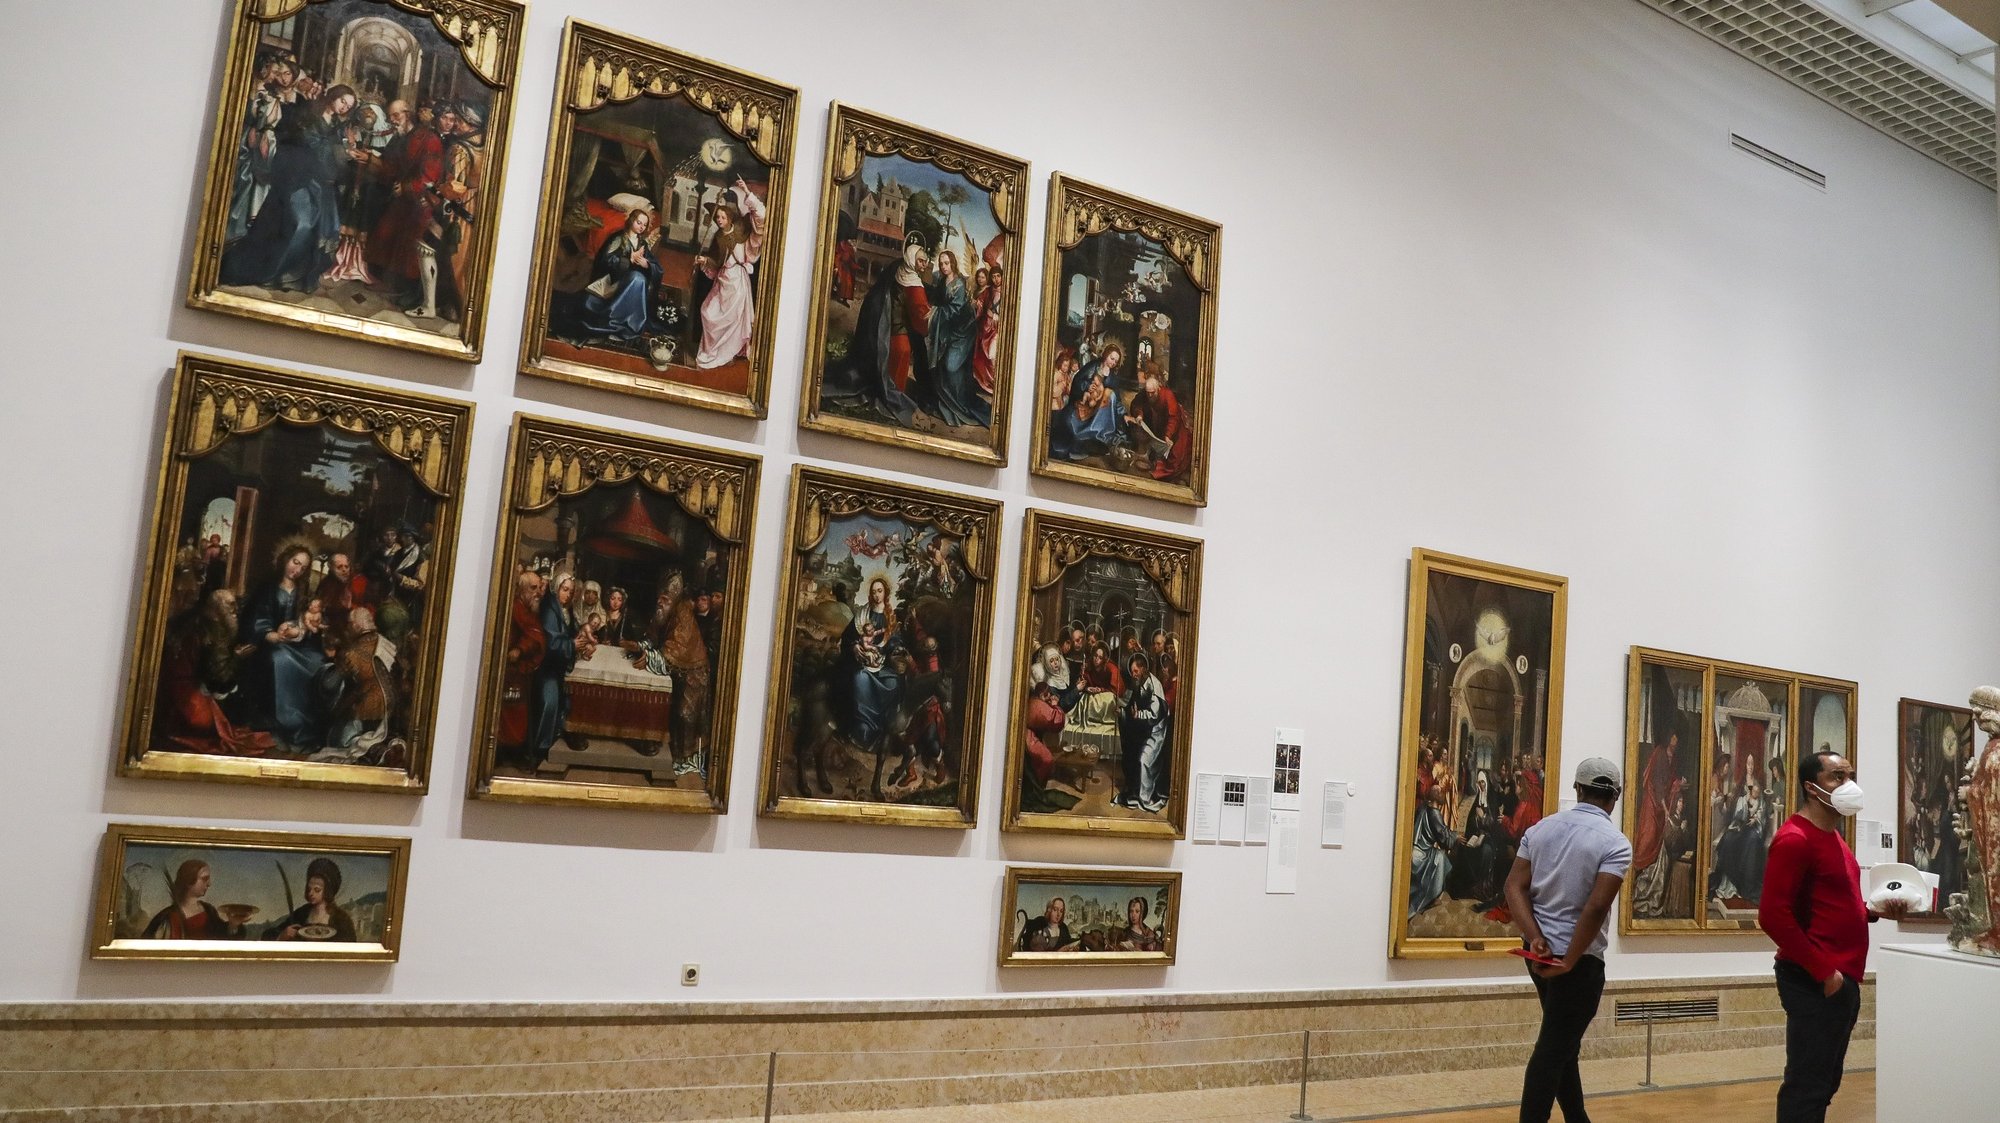 Visitantes admiram obras de arte expostas no Museu Nacional de Arte Antiga, no Dia Internacional dos Museus em Lisboa, 18 de maio de 2020. TIAGO PETINGA/LUSA